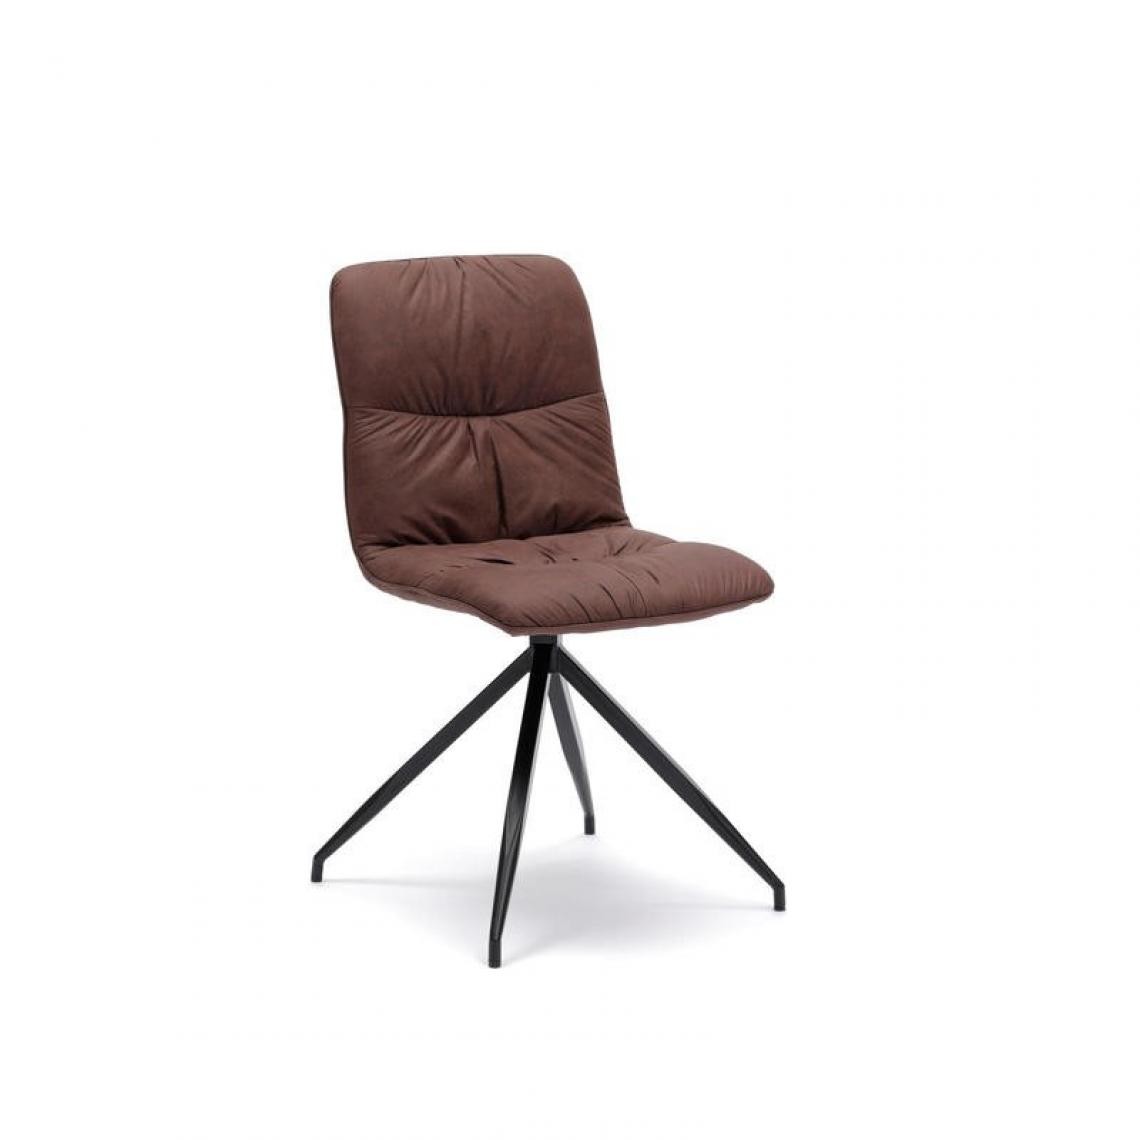 Webmarketpoint - Chaise en tissu microfibre effet velours marron 43x38xh. 86,5 cm - Chaises